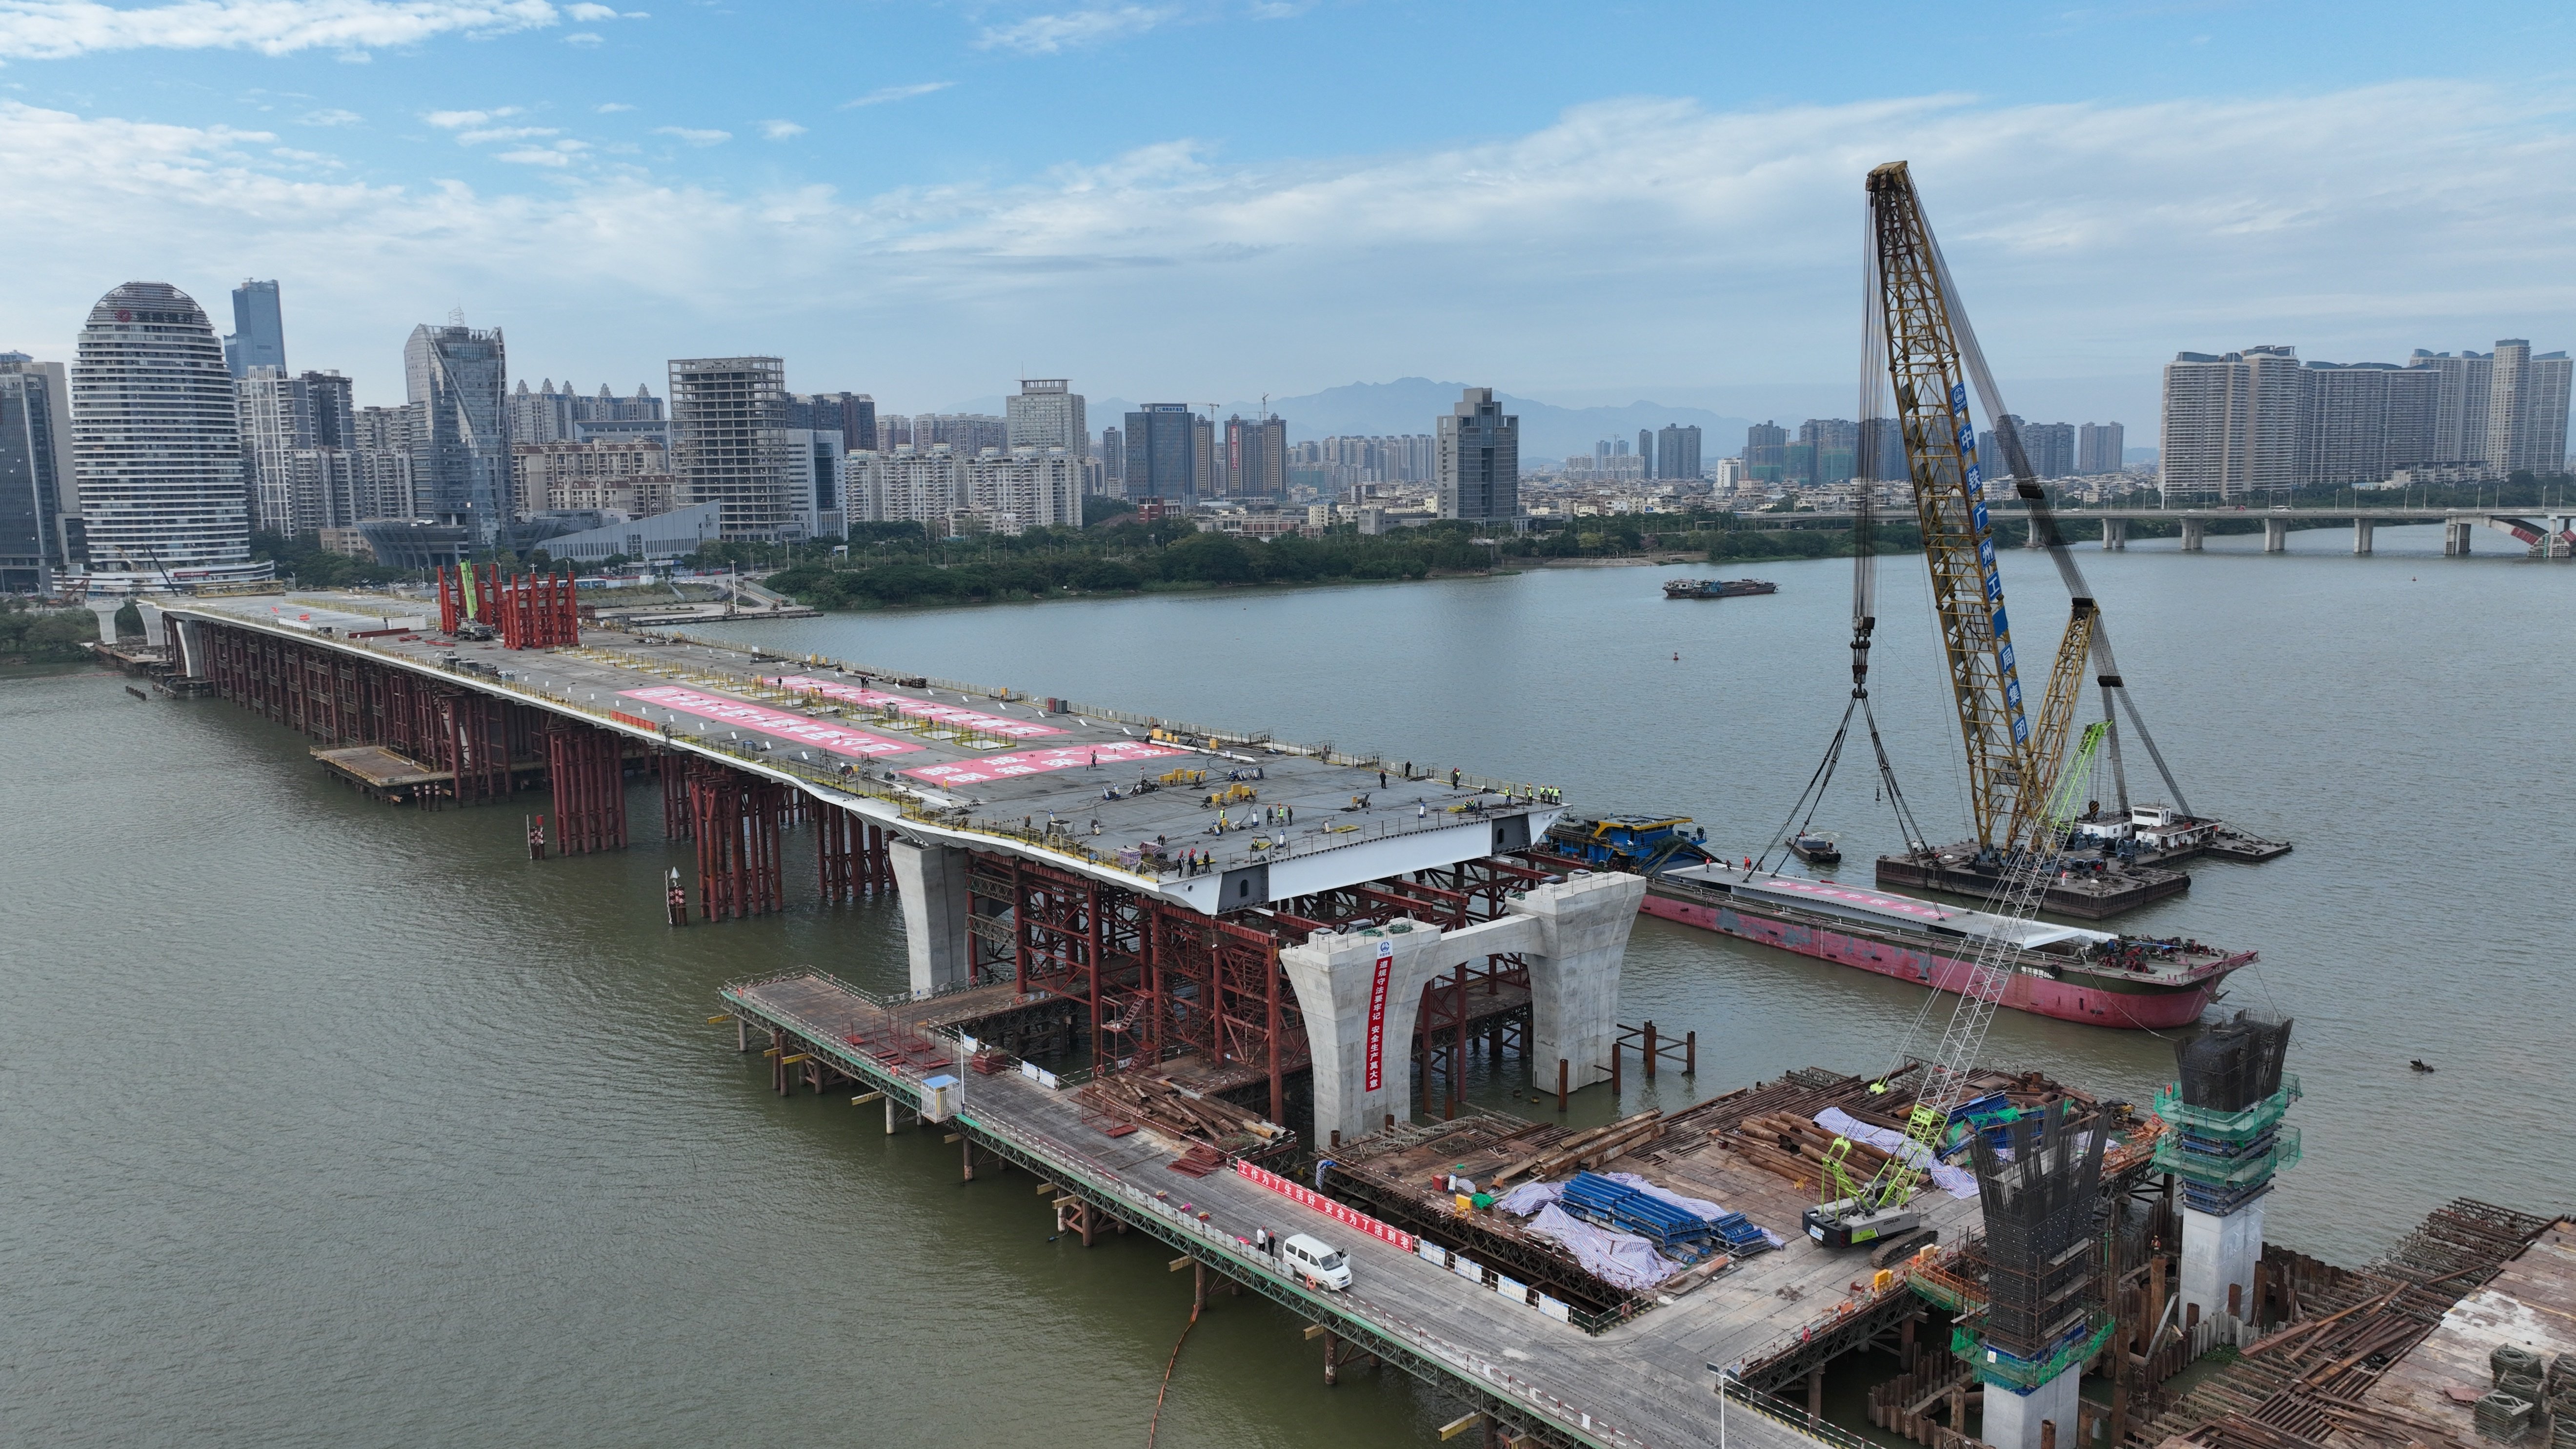 惠州鹅城大桥效果图图片